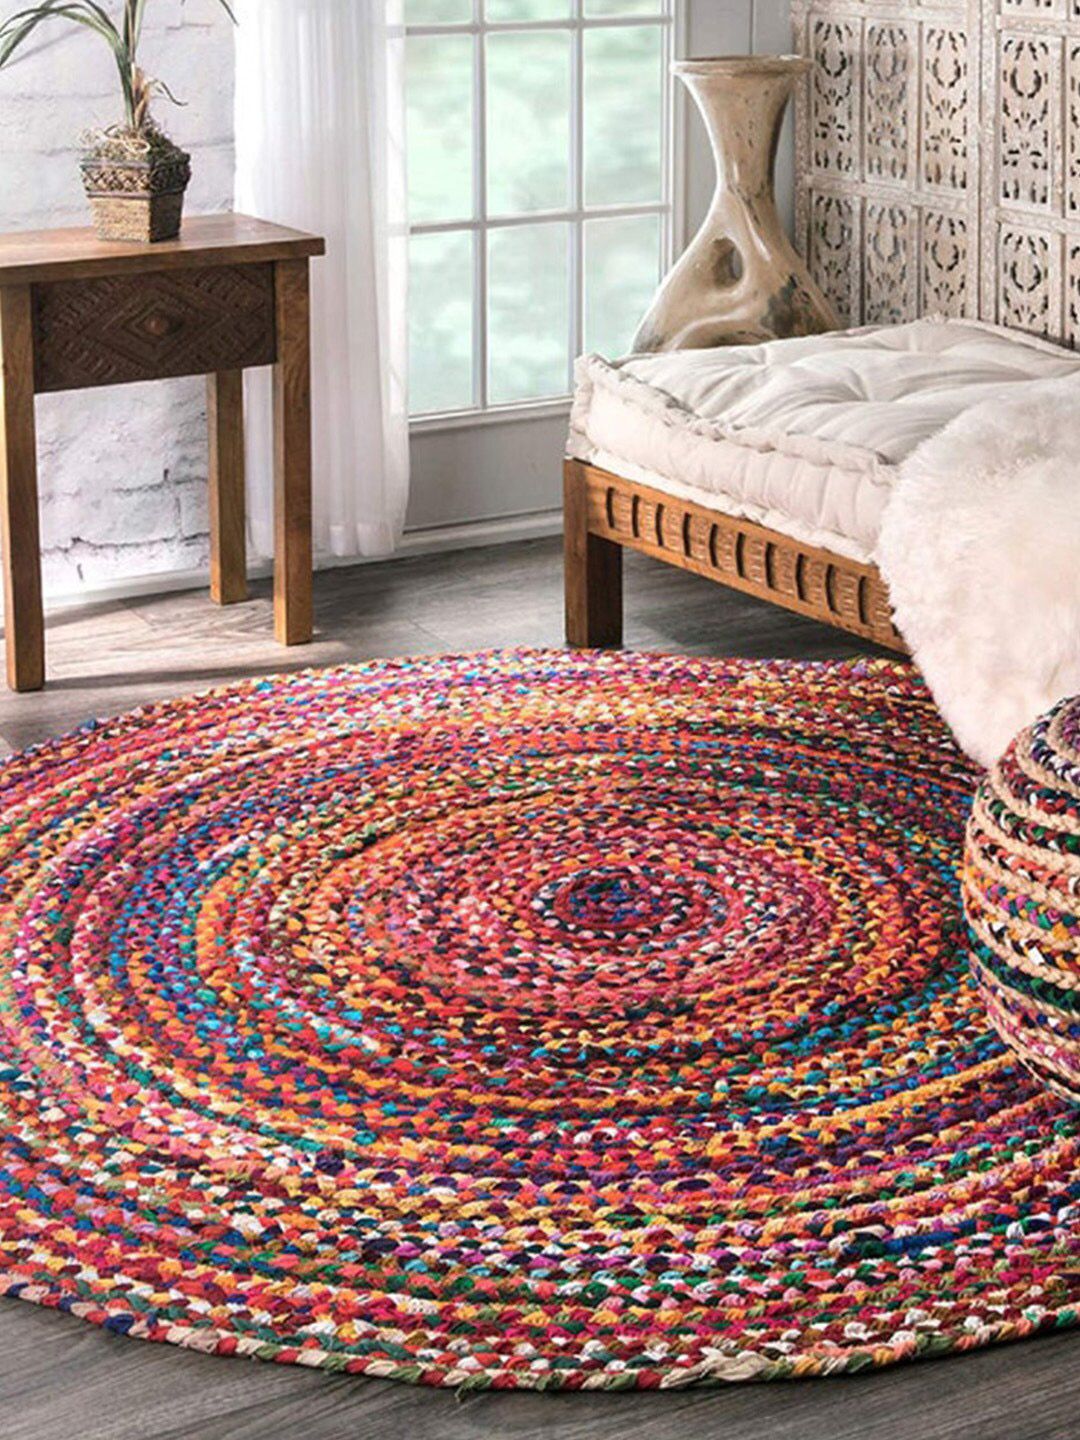 HABERE INDIA Multi-Coloured Braided Round Jute Carpet Price in India